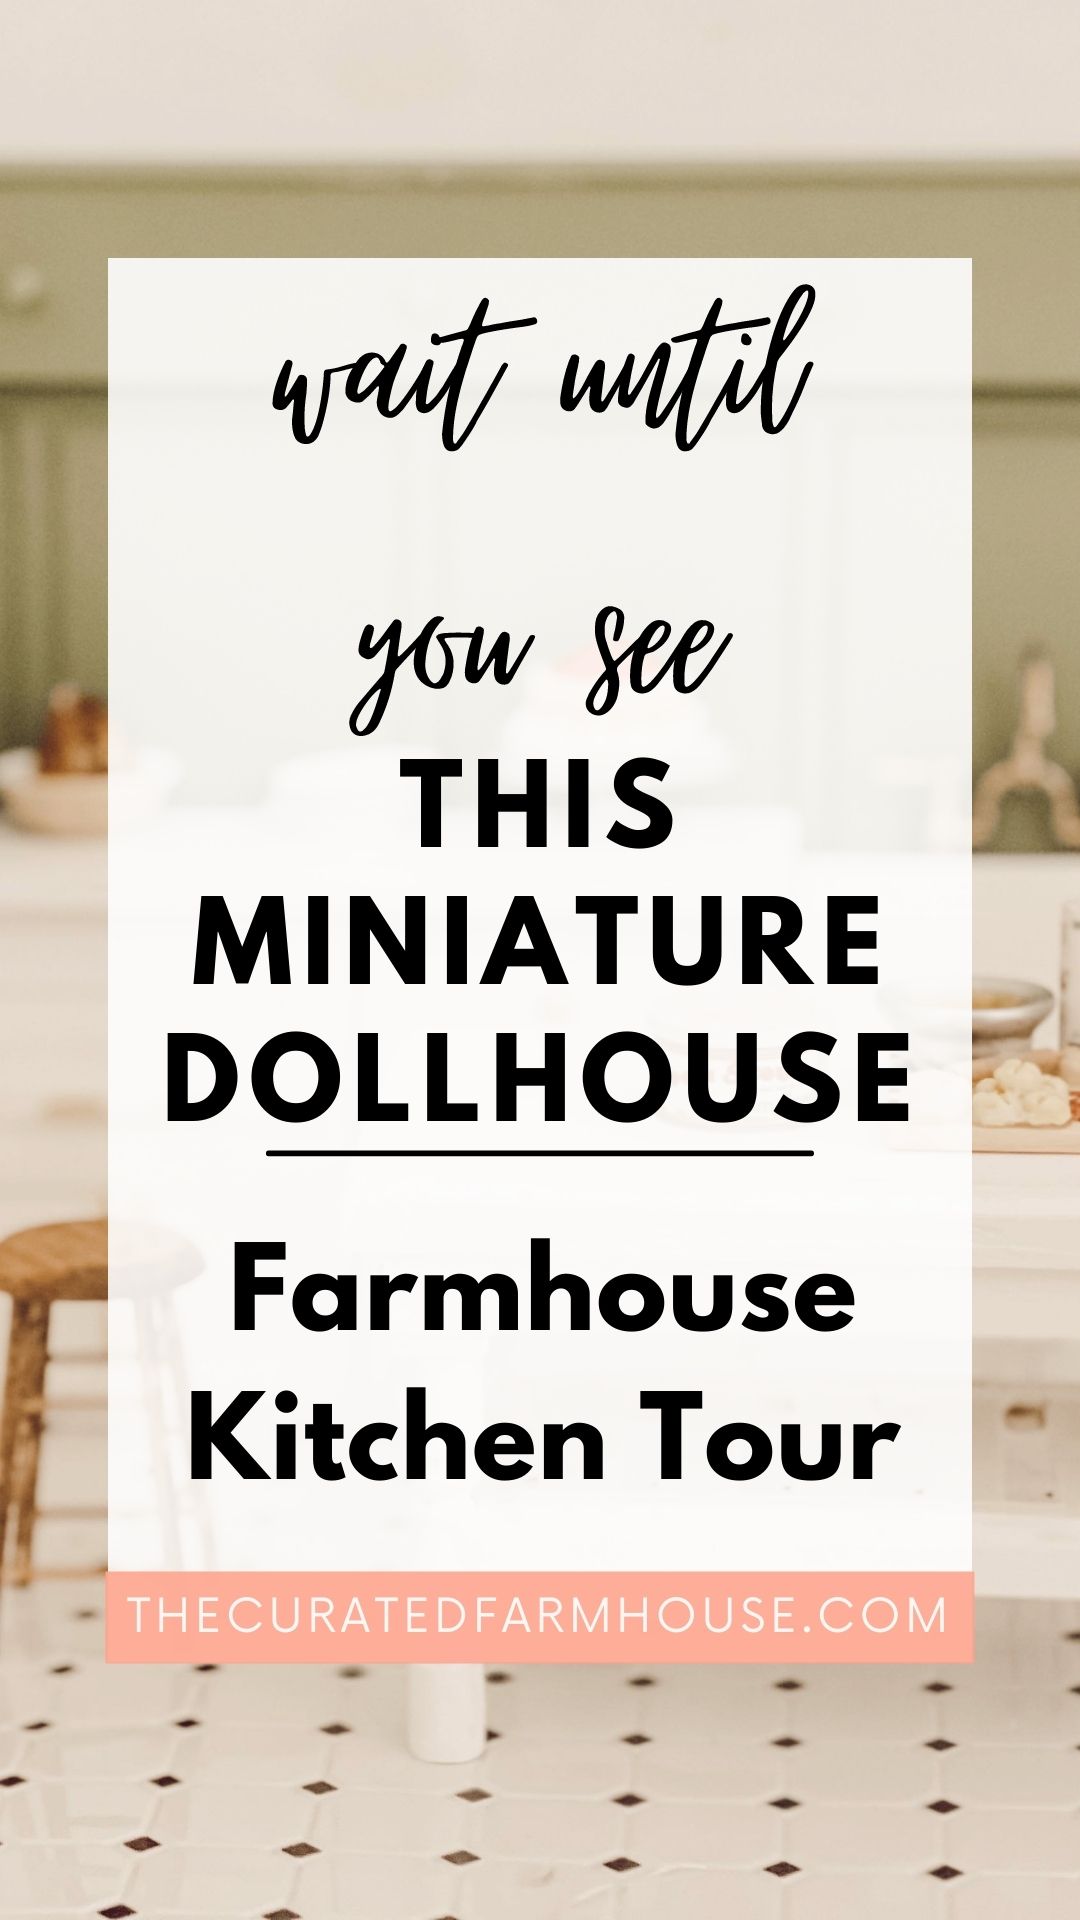 Wait Until You See This Miniature Dollhouse Farmhouse Kitchen Tour